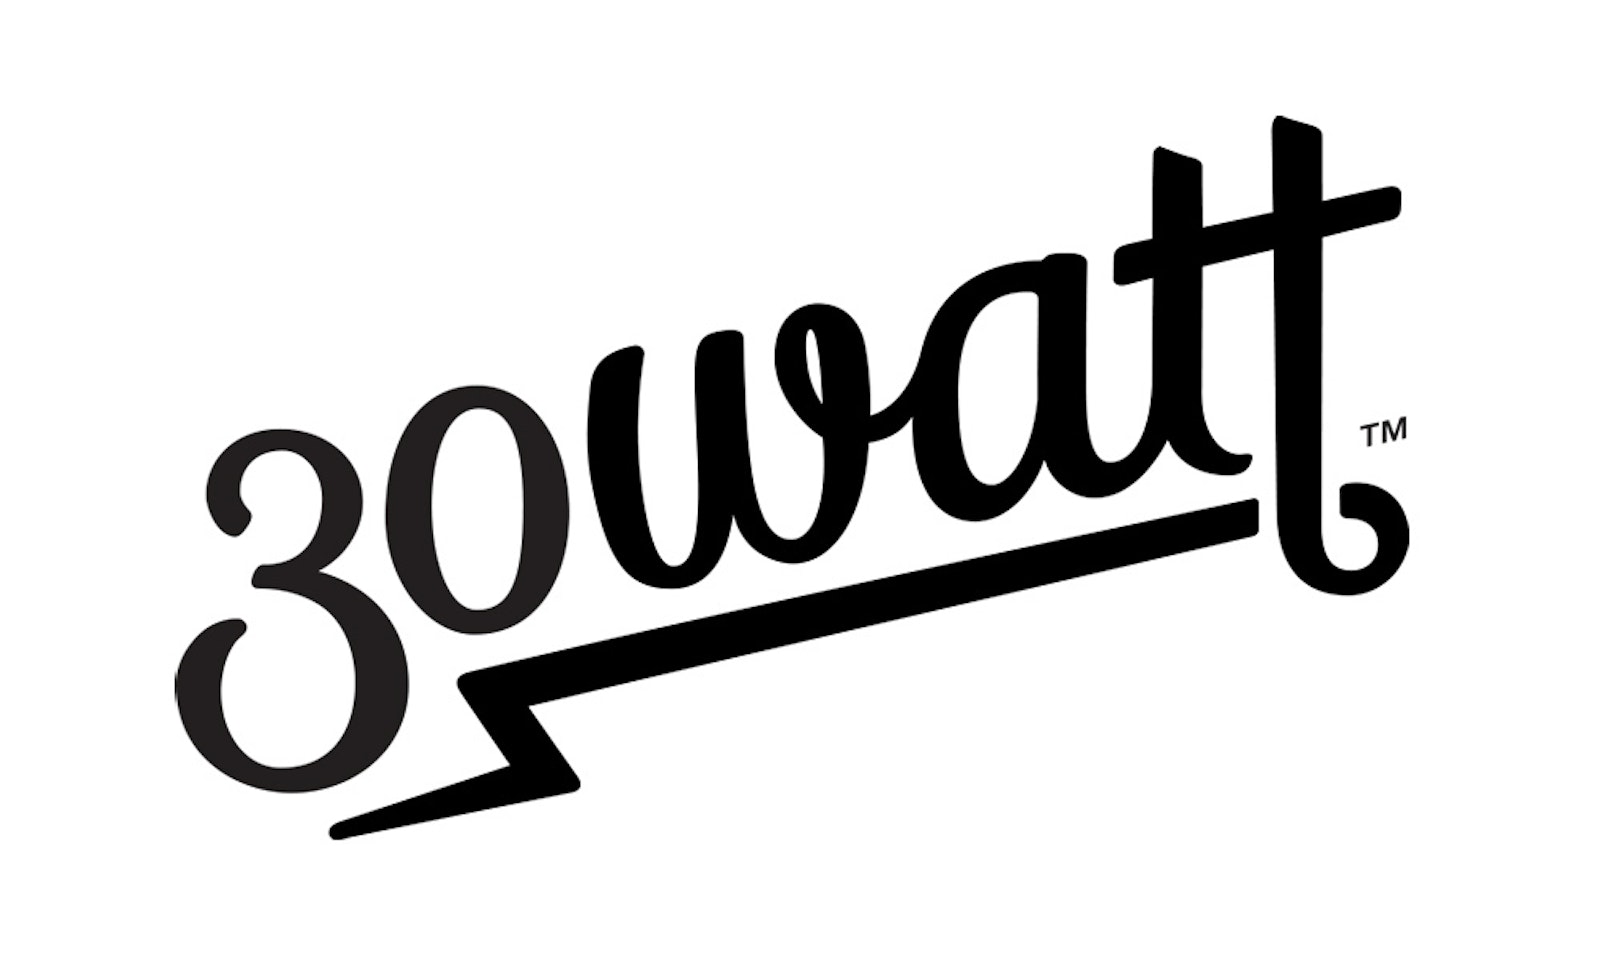 CAP 30 Watt Logo